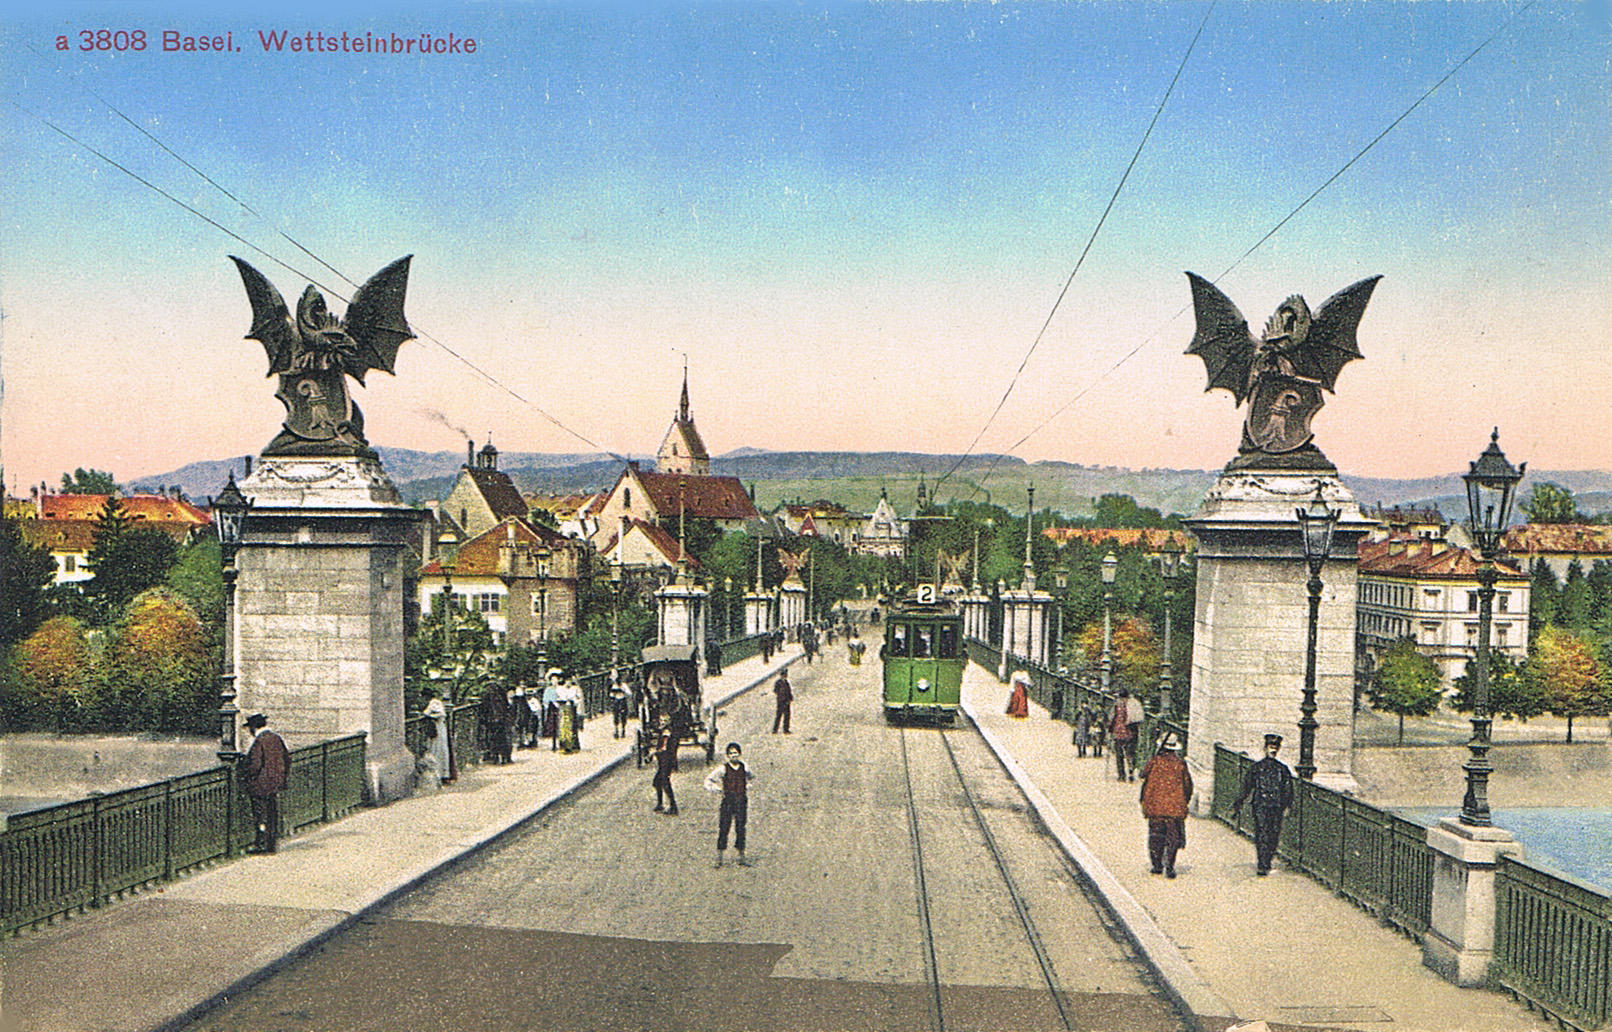 Abbildung der Wettsteinbrücke um 1900